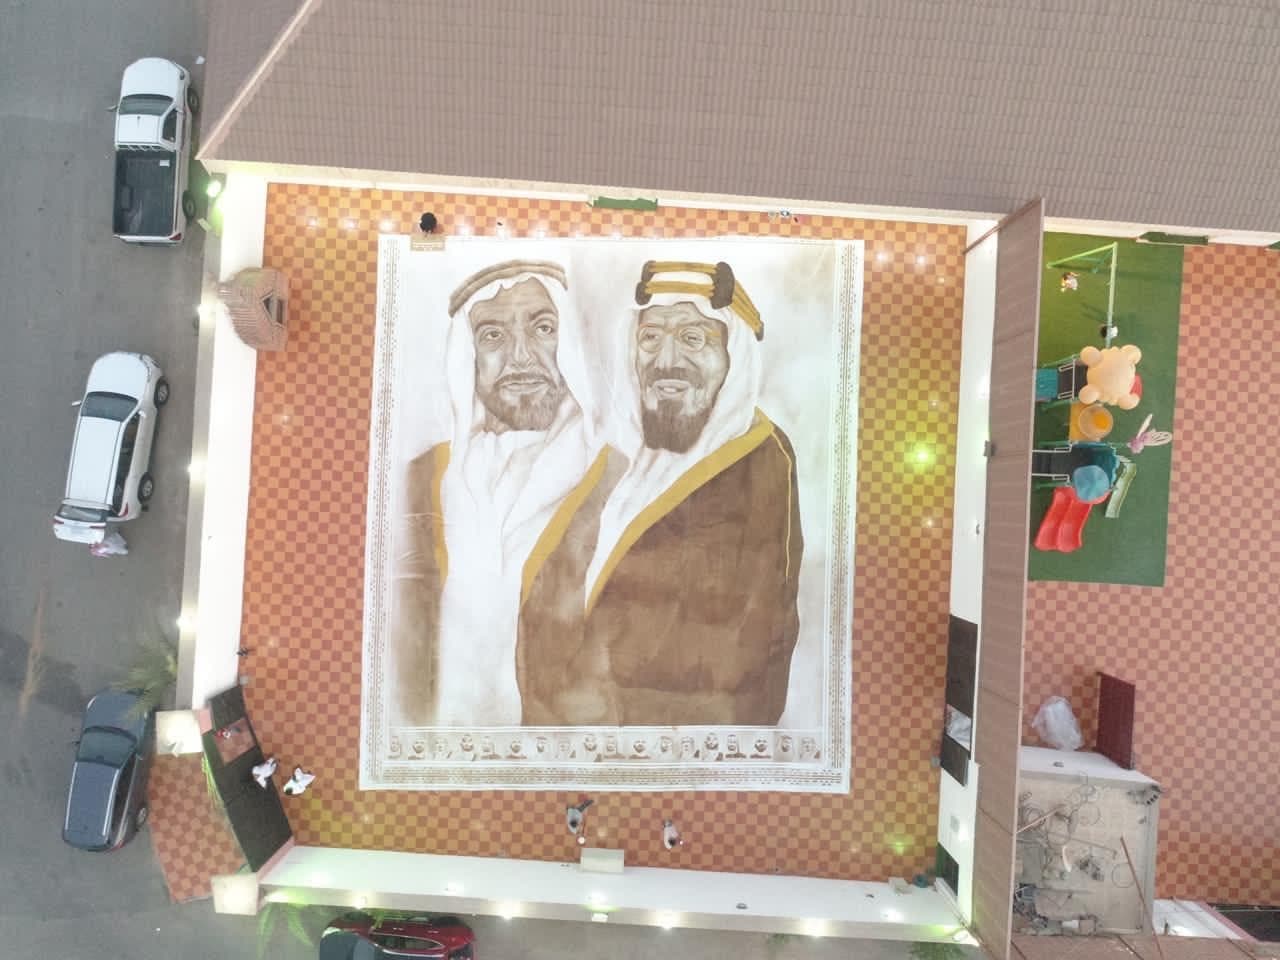 عهود عبدالله تهدي الإمارات أكبر لوحة بالعالم وتدخل غينيس